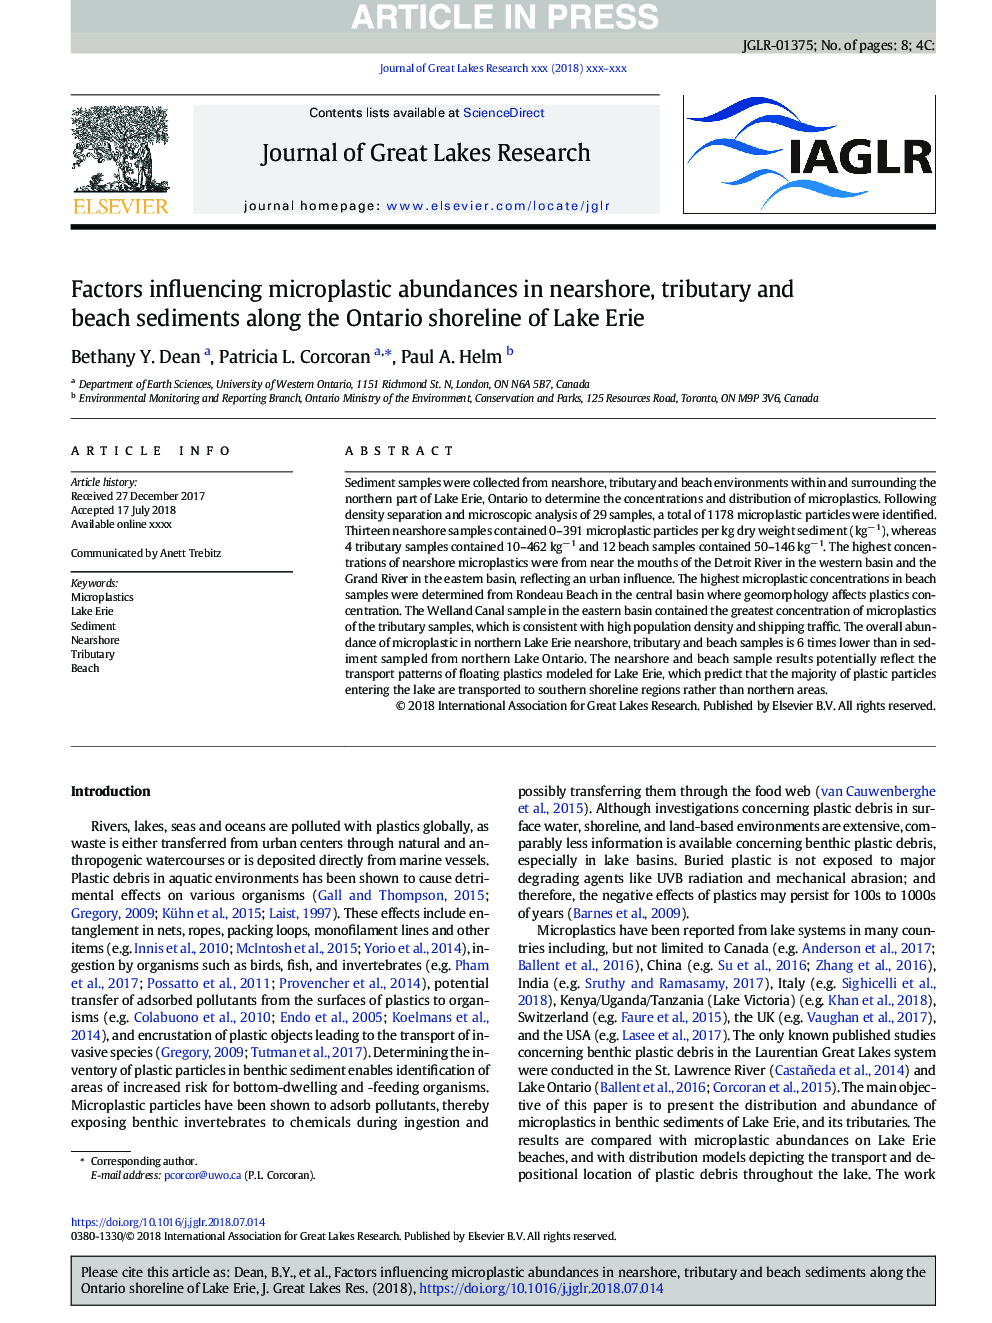 عوامل موثر بر فراوانی میکرو پلاسمایی در رسوبات نواحی ساحلی، ساحلی و ساحل در امتداد خط ساحلی انتاریو دریاچه اری